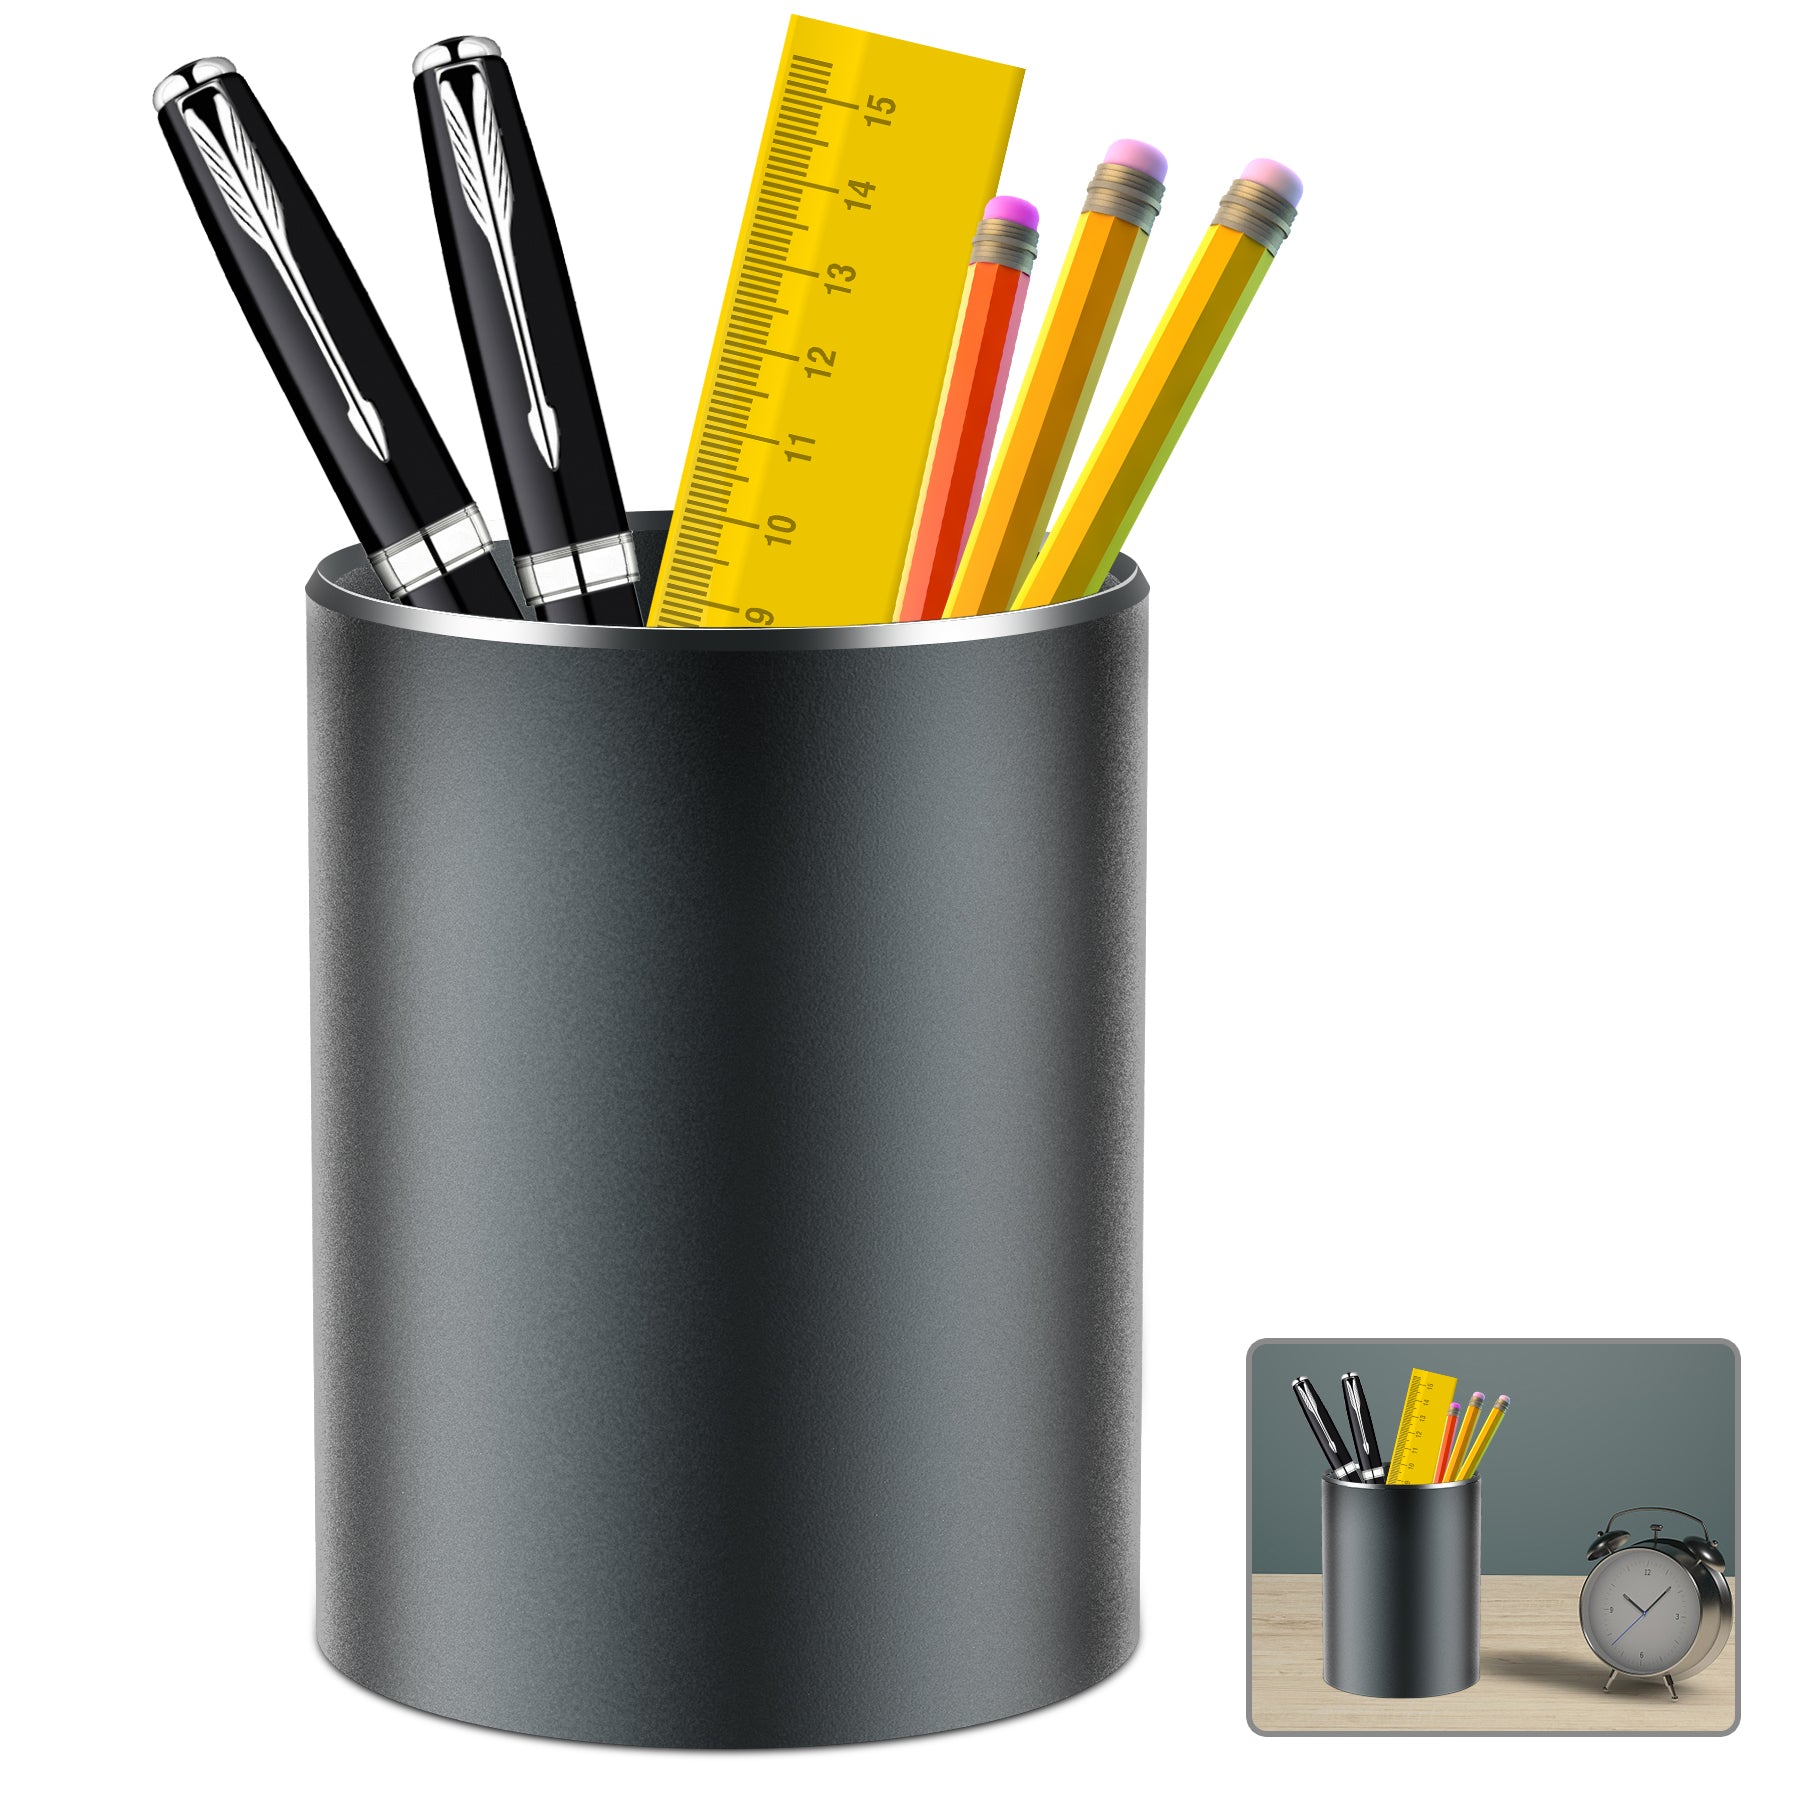 Giecy Pen Holder Pencil Holder for Desk Metal Desk Pen Cup Holder Makeup Brush Holder, Desktop Pen Organizer and Pencil Cup for Office,3.93*3.14inch Rose Gold